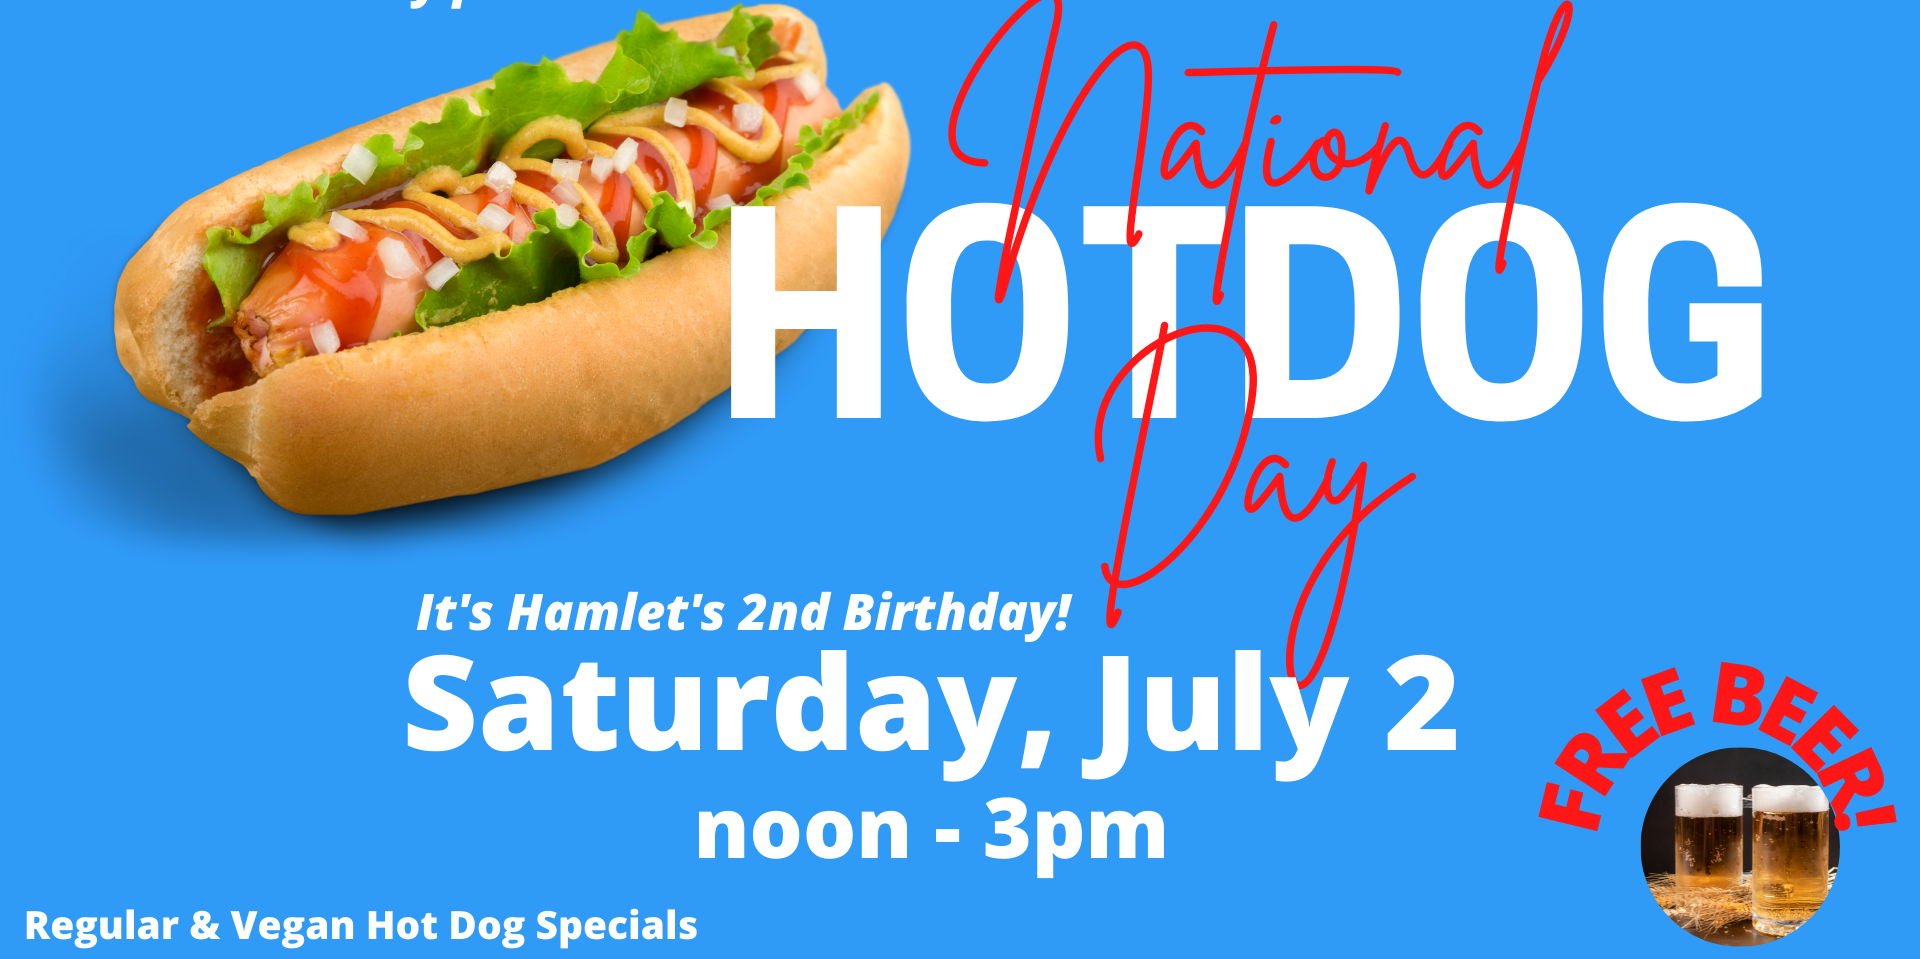 National Hot Dog Day promotional image